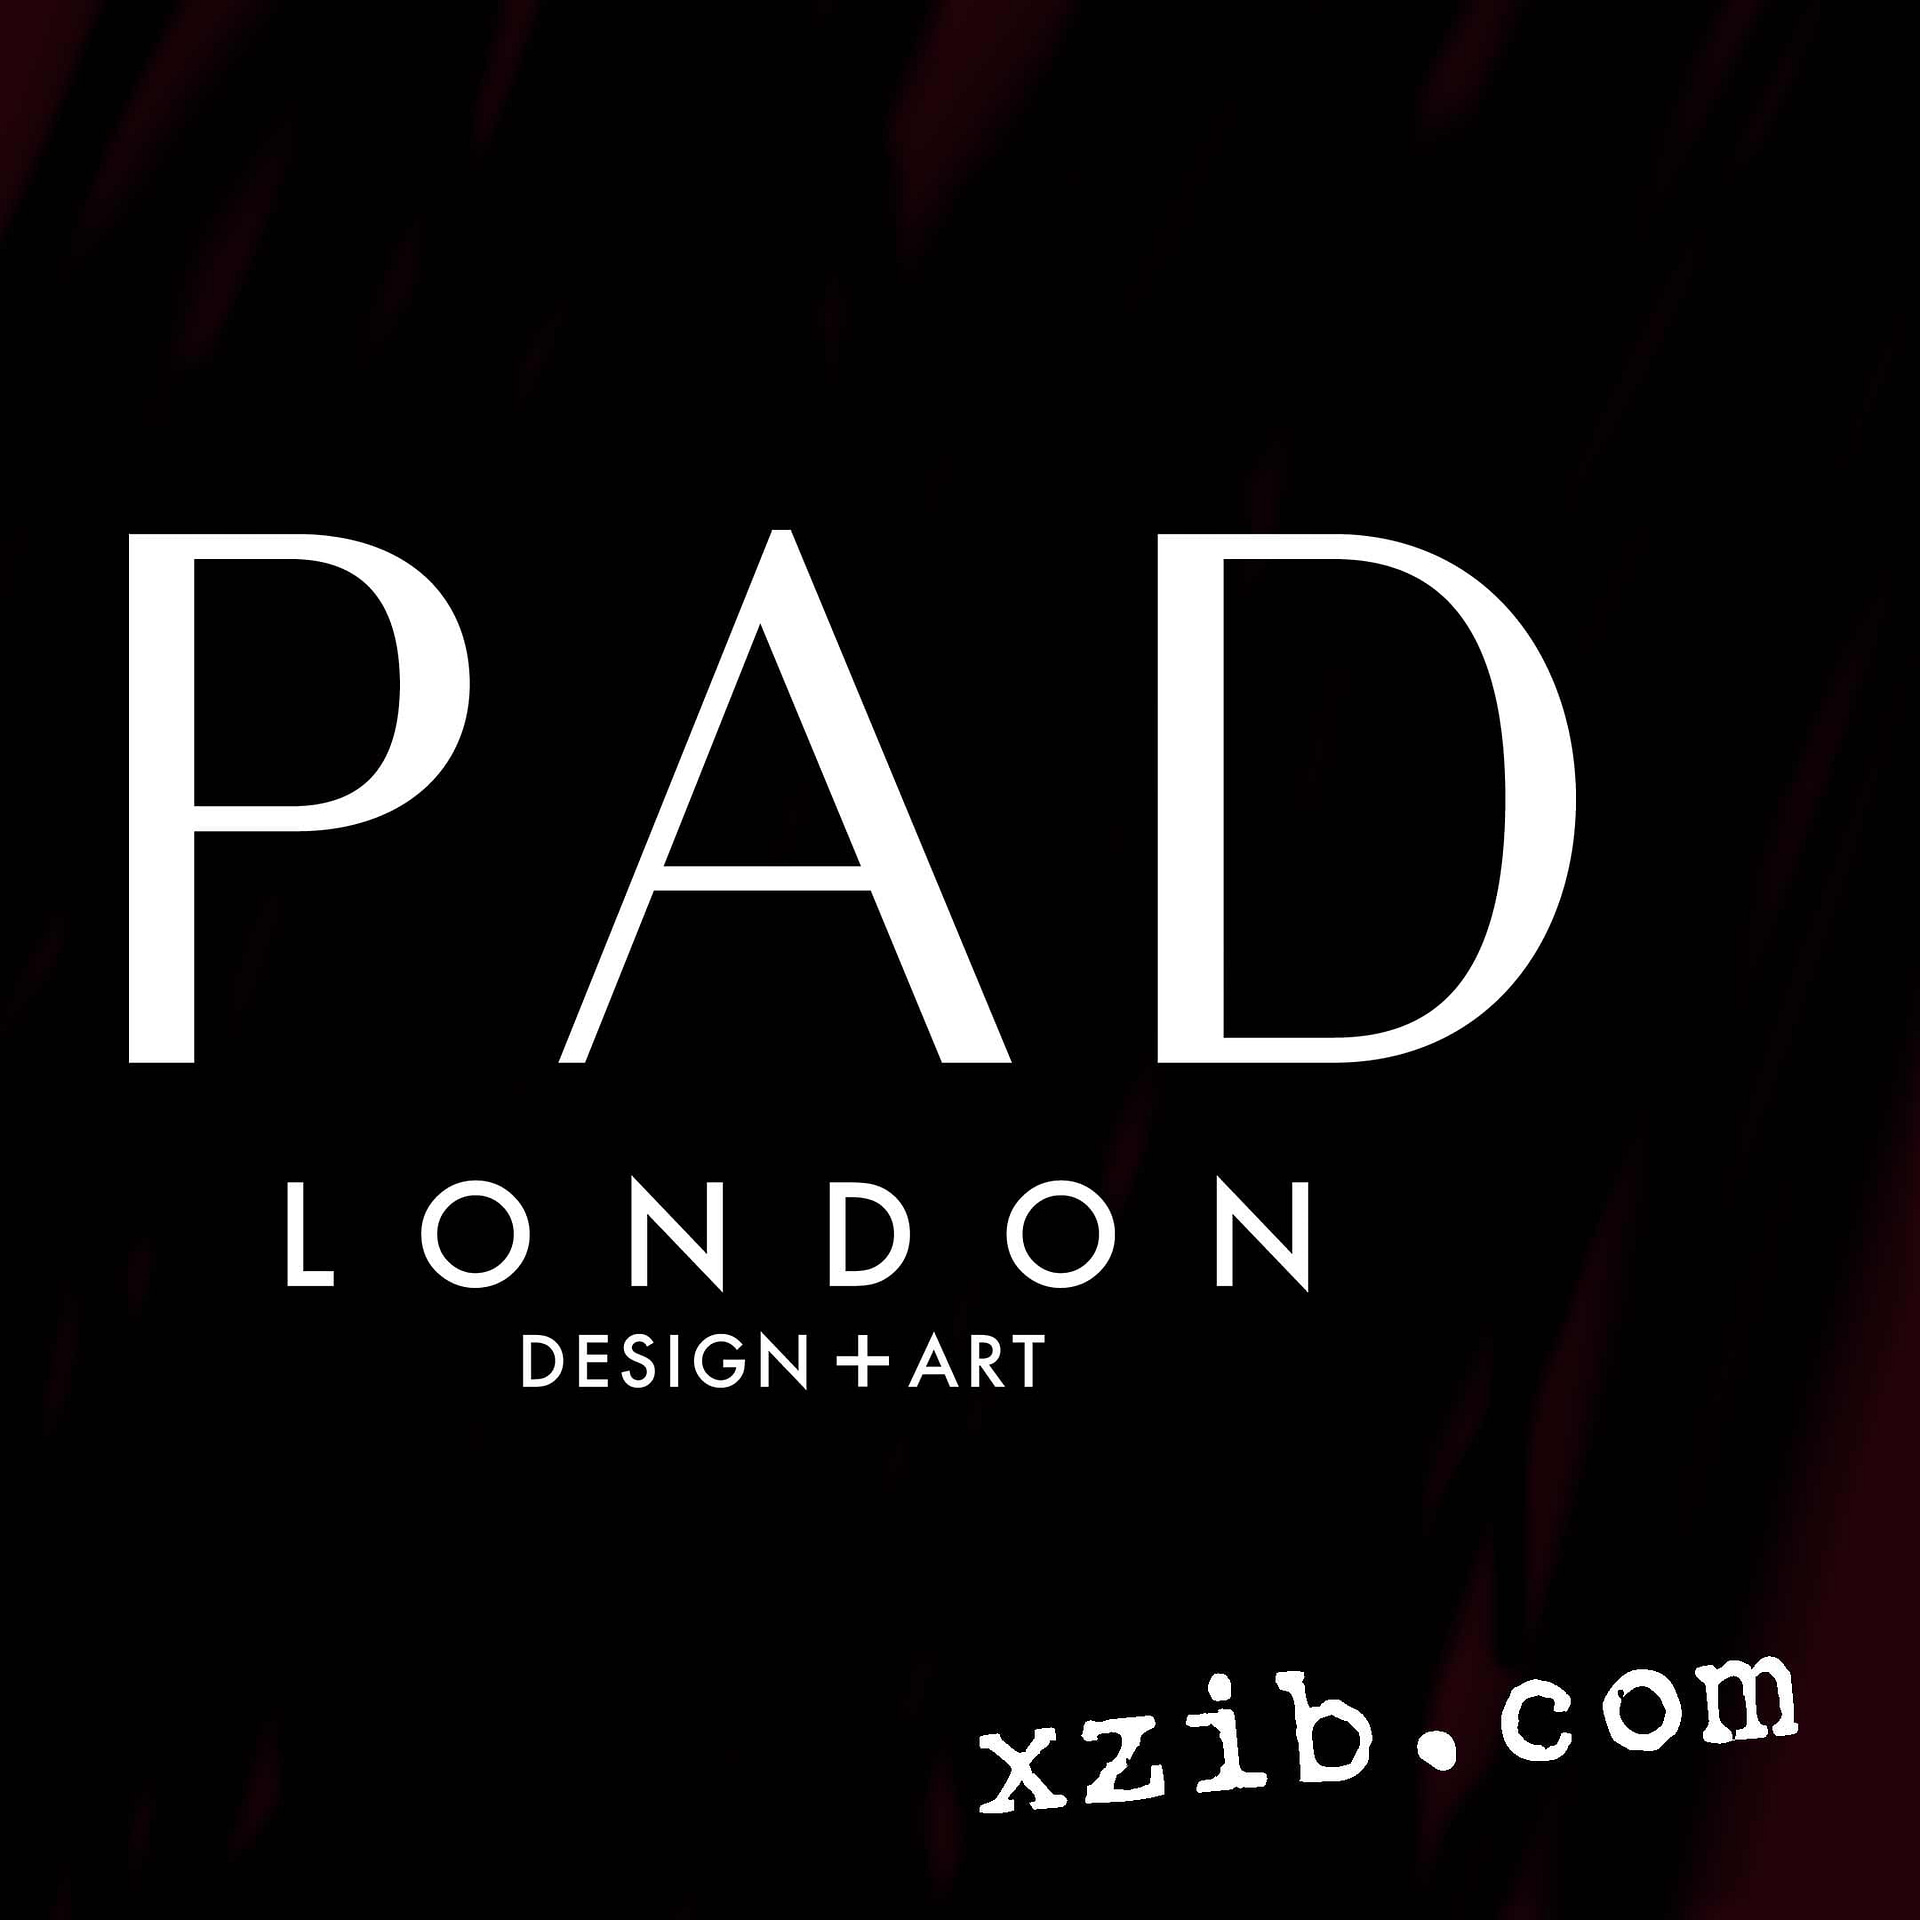 Pad London